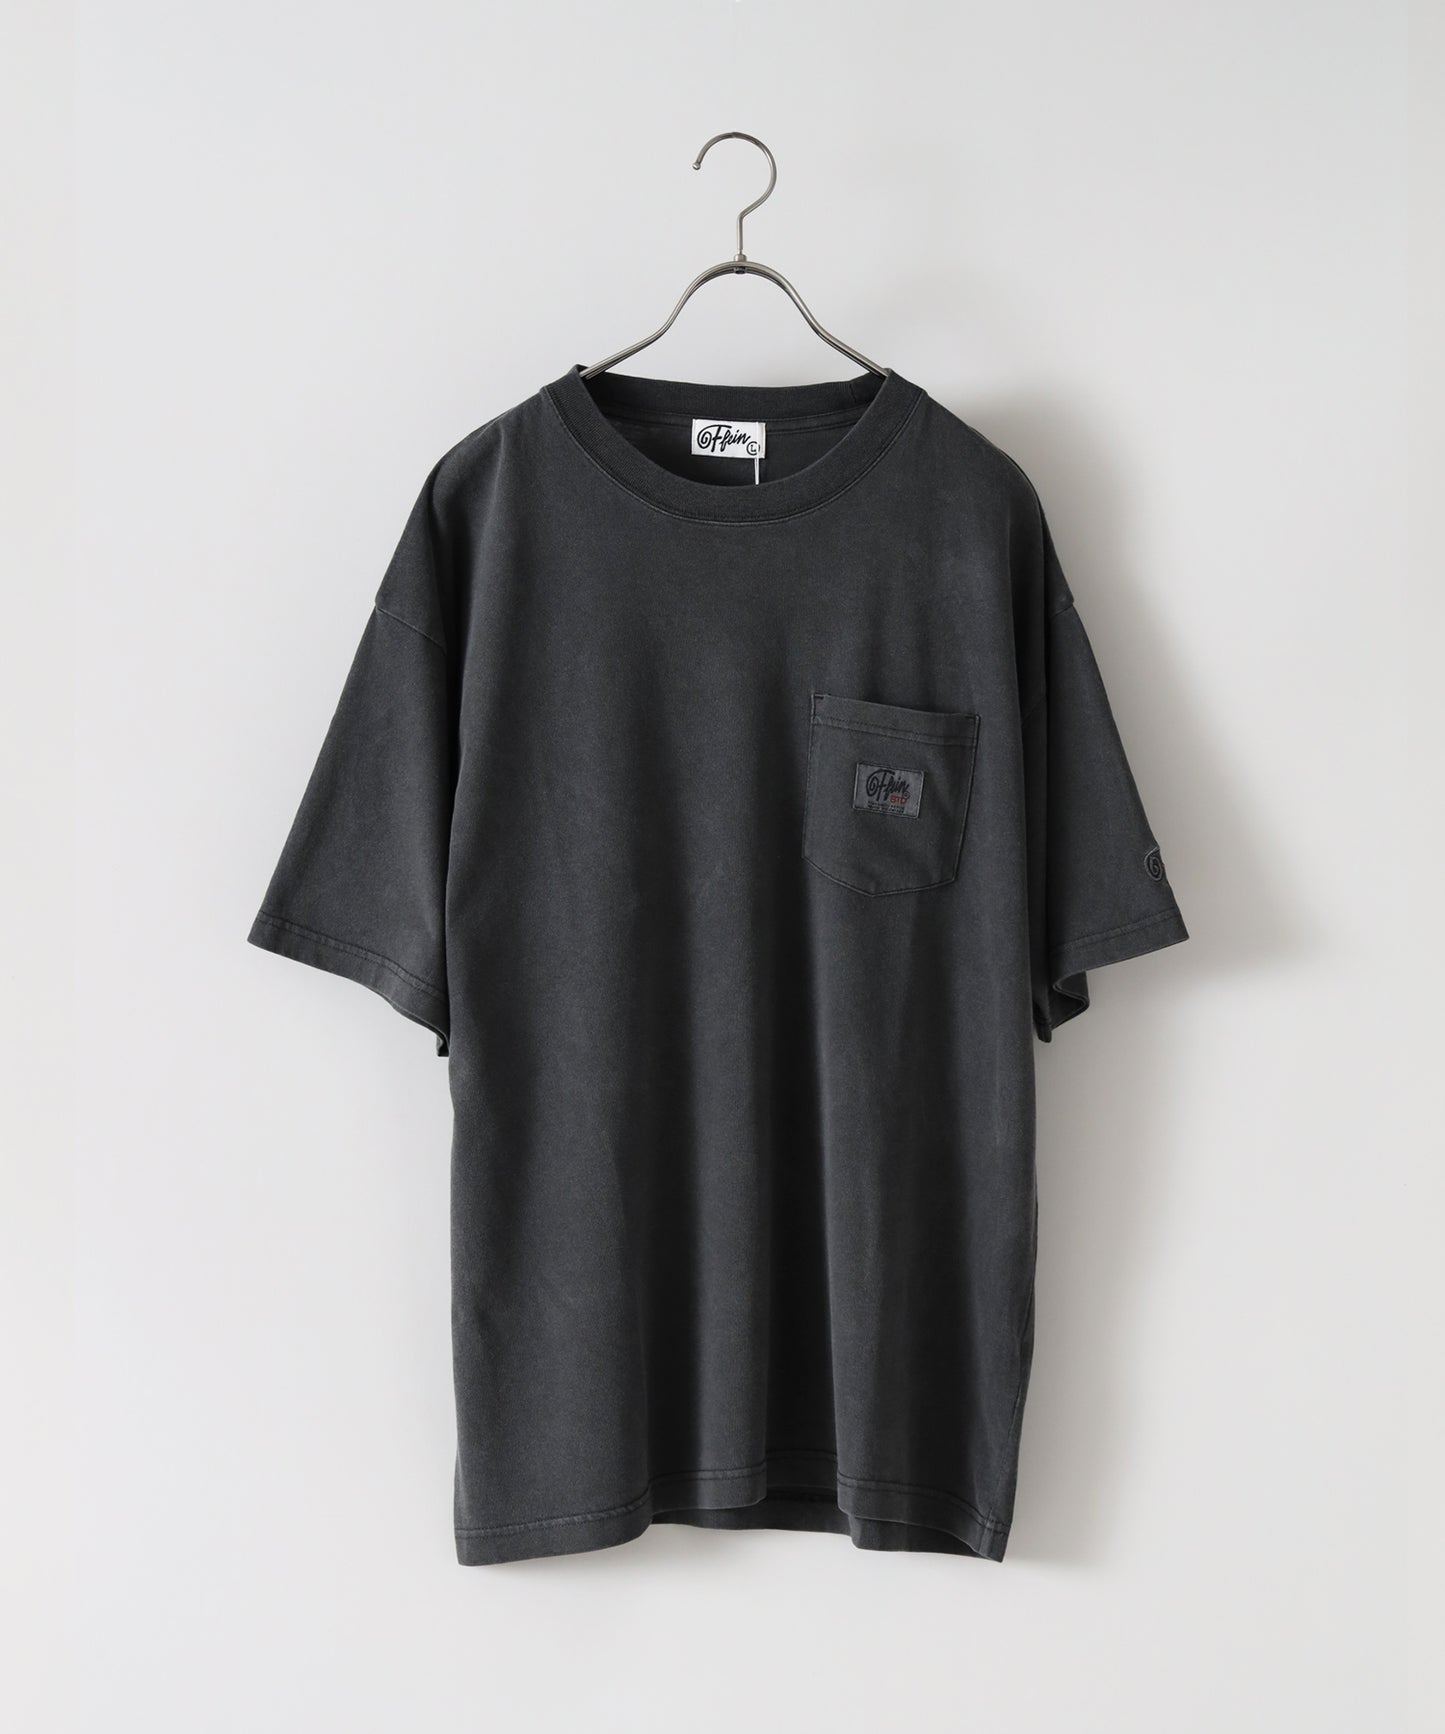 ヴィンテージライクロゴ刺繍ポケットTシャツ / チャコール